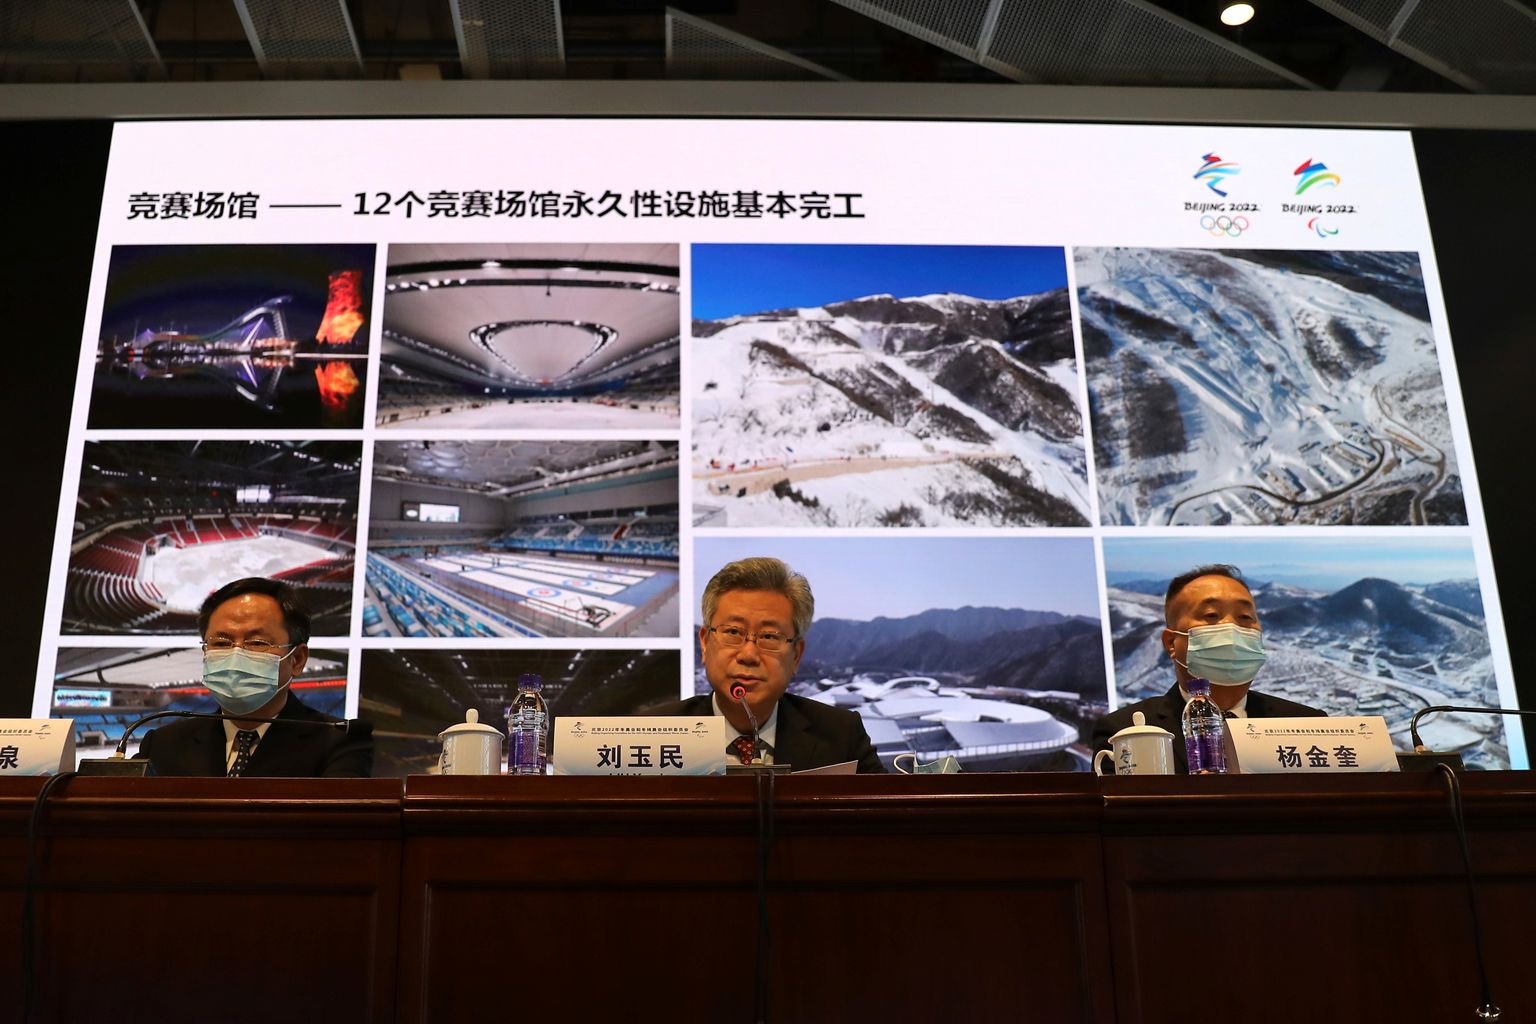 Hiina Pekingi taliolümpiamängude korralduskomitee eesotsas juhi Liu Yuminiga (keskel) tutvustas 30. juulil 2021 toimunud pressikonverentsil tuelvase taliolümpia võistluspaikasid